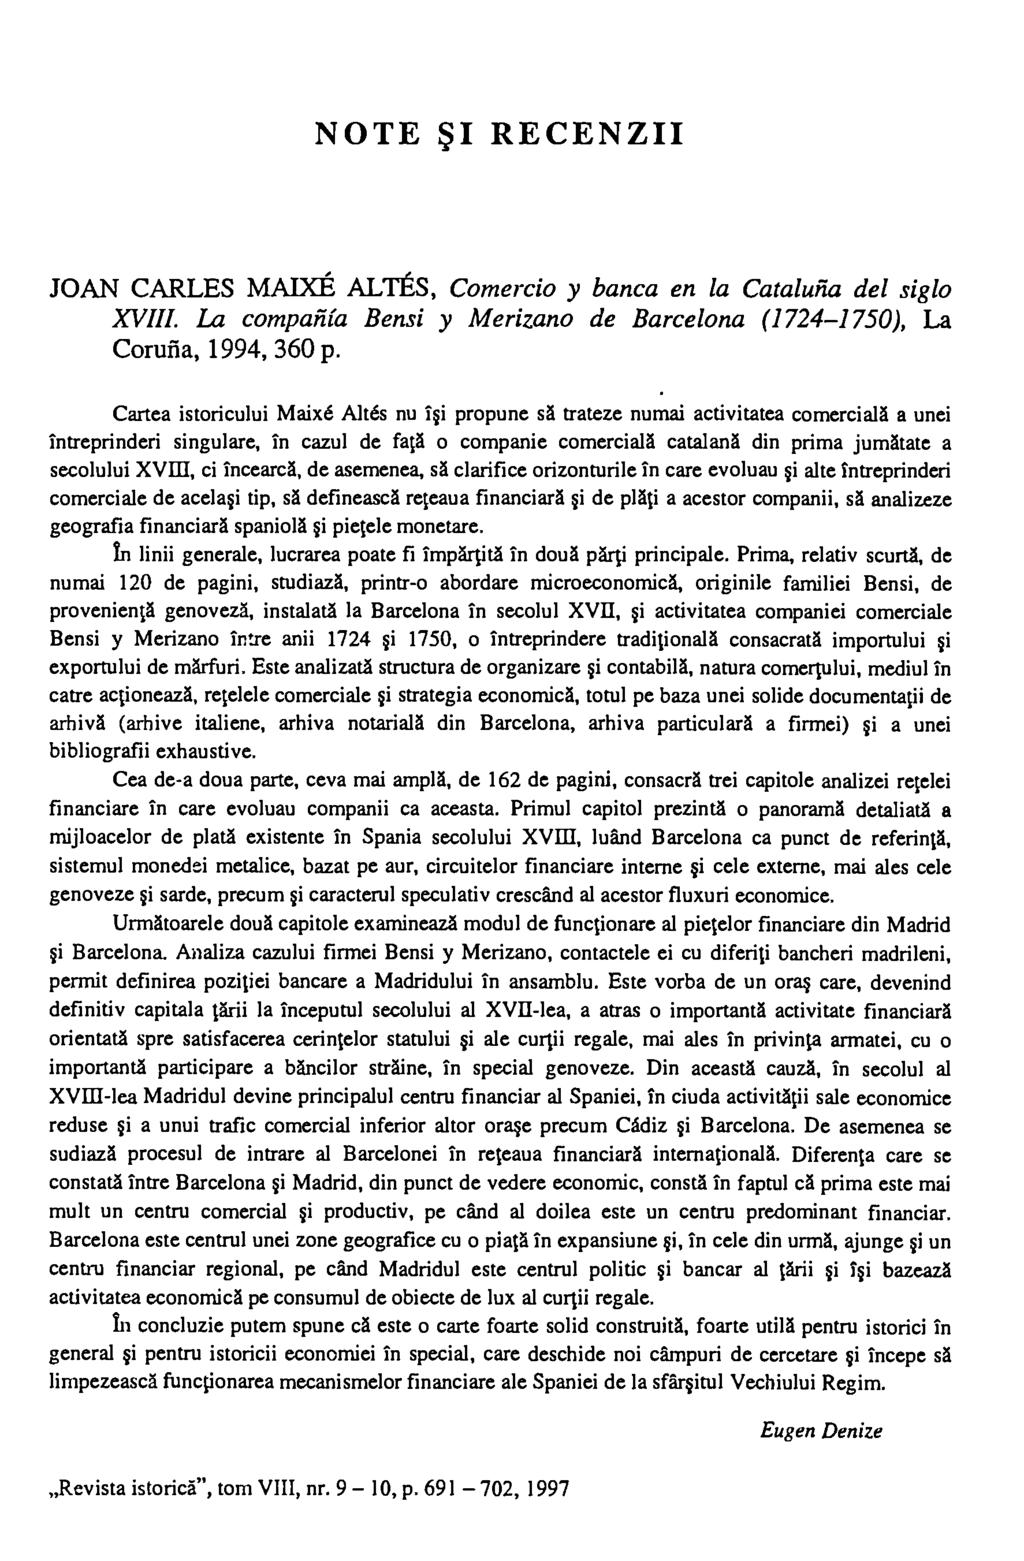 NOTE SI RECENZII JOAN CARLES MAIXE ALTES, Comercio y banca en la Cataluna del siglo XVIII. La companta Bensi y Merizano de Barcelona (1724-1750), La Corufia, 1994, 360 p.